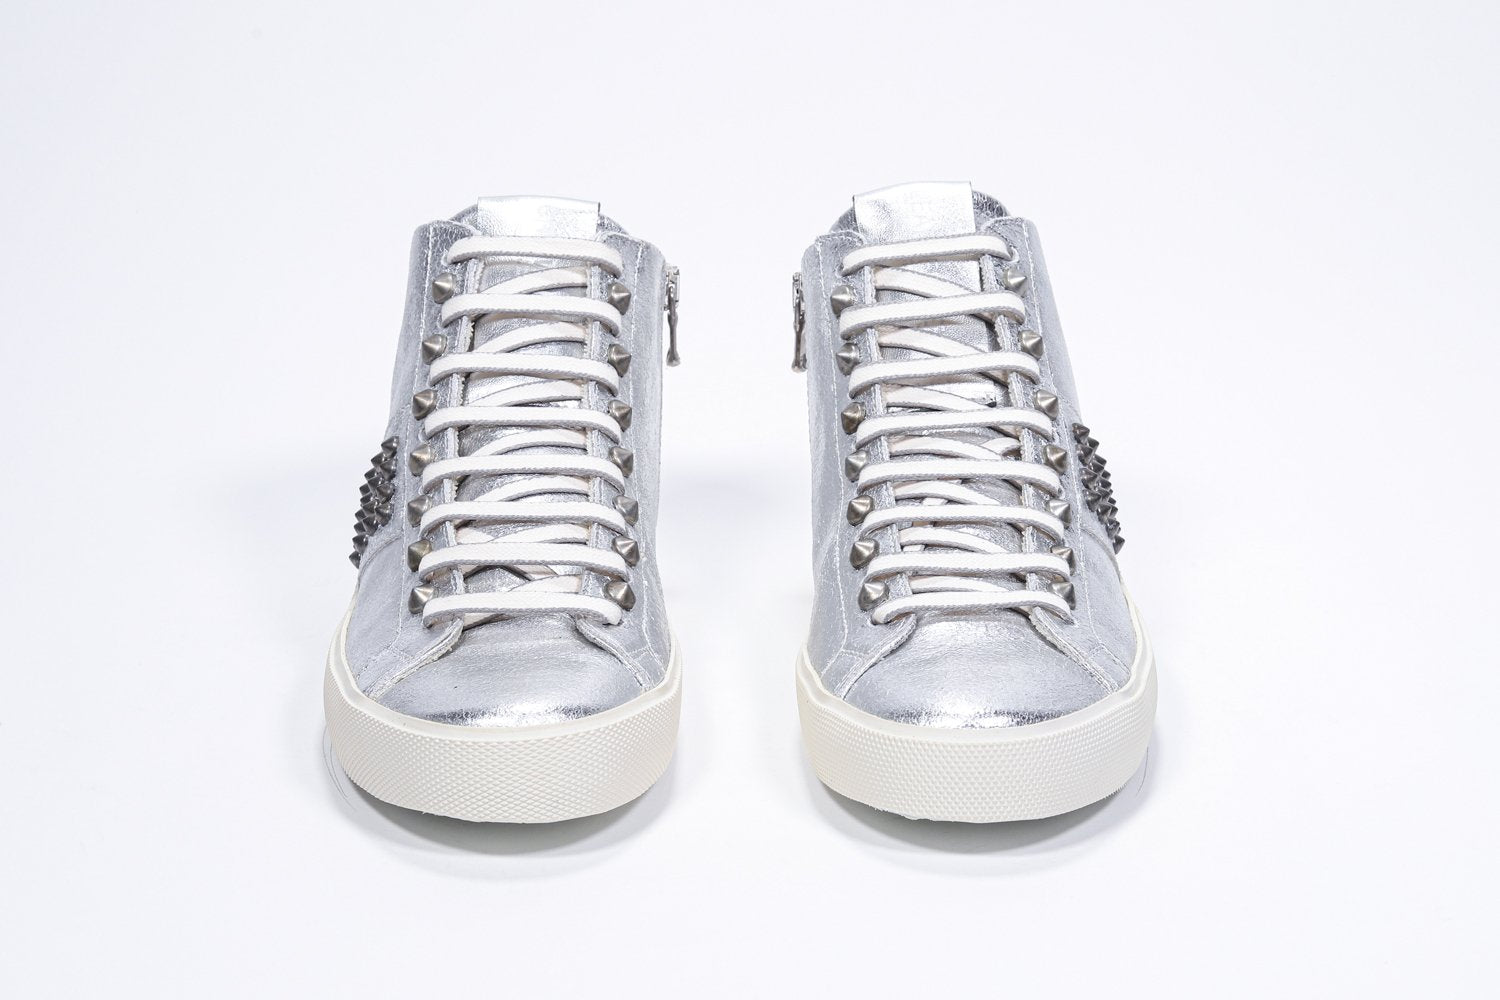 Vue de face de la chaussure intermédiaire en argent métallisé sneaker. Tige en cuir avec clous, fermeture éclair intérieure et semelle en caoutchouc vintage.